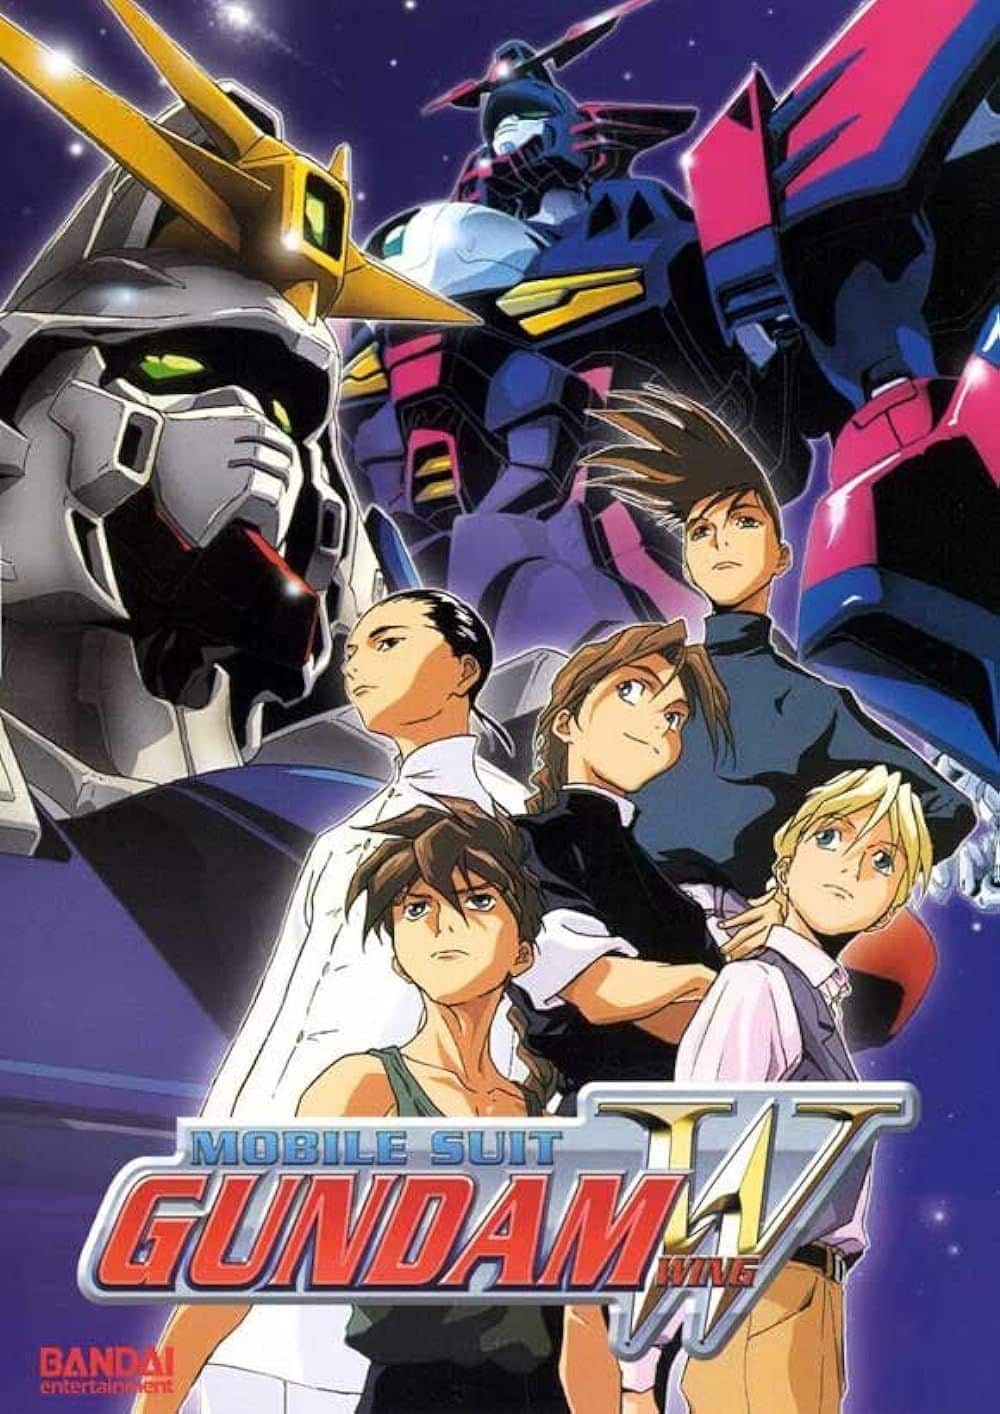 Los personajes principales de Mobile Suit Gundam Wing contra robots mechas en el cartel de la serie